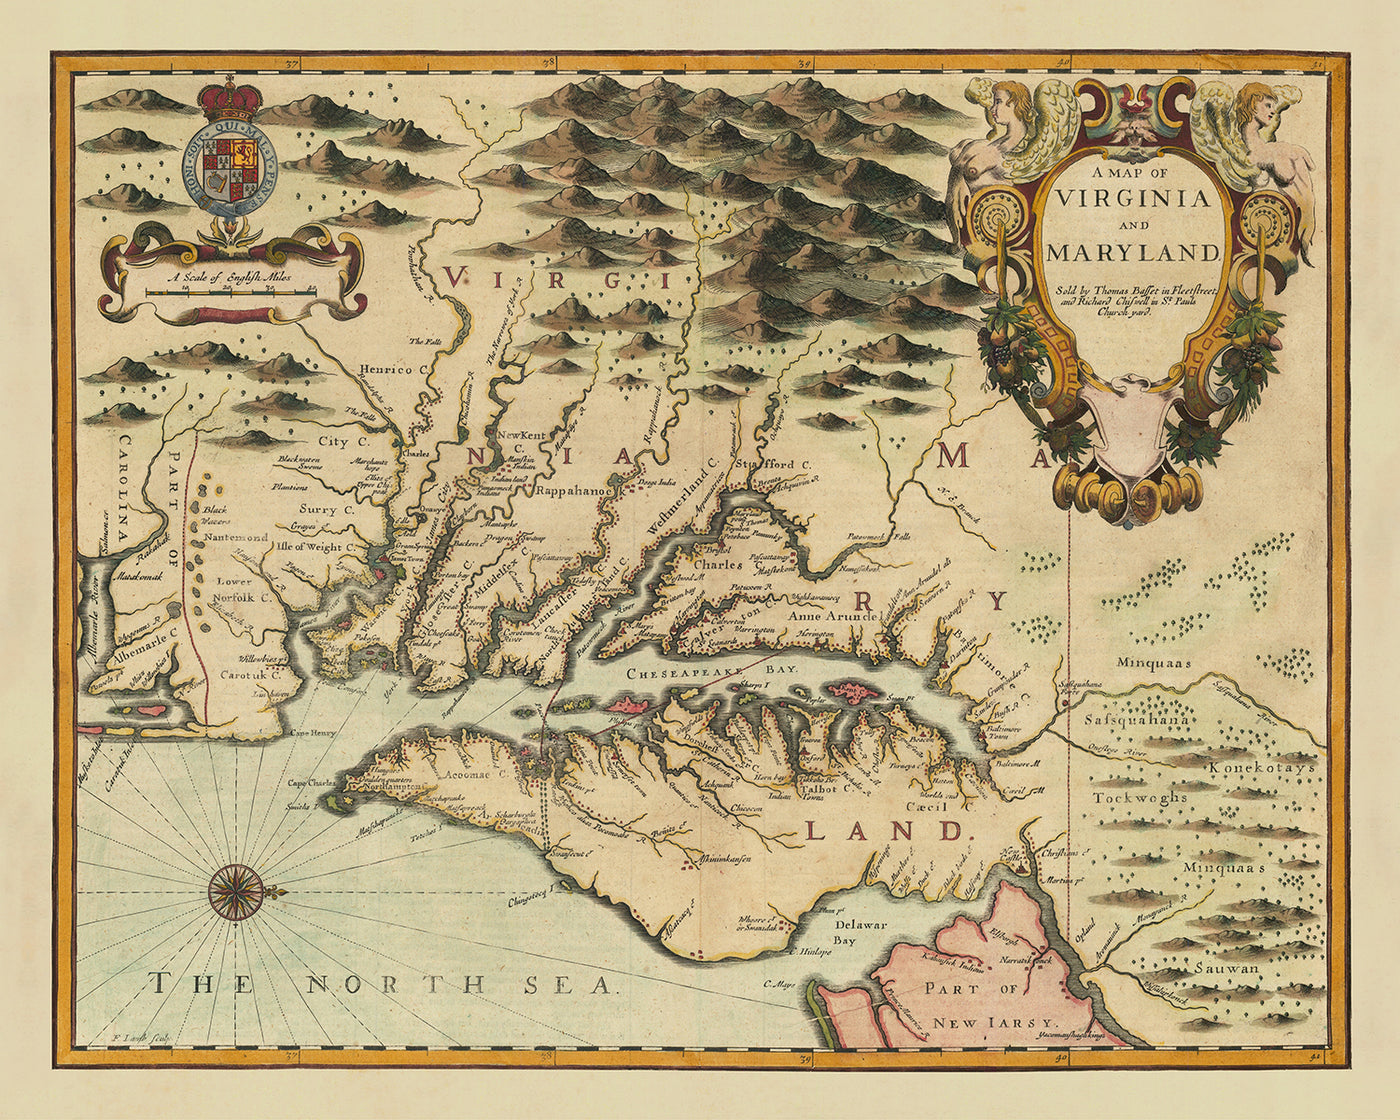 Ancienne carte de la Virginie et du Maryland par John Speed, 1676 : Jamestown, Yorktown, la baie de Chesapeake et la ligne Mason-Dixon